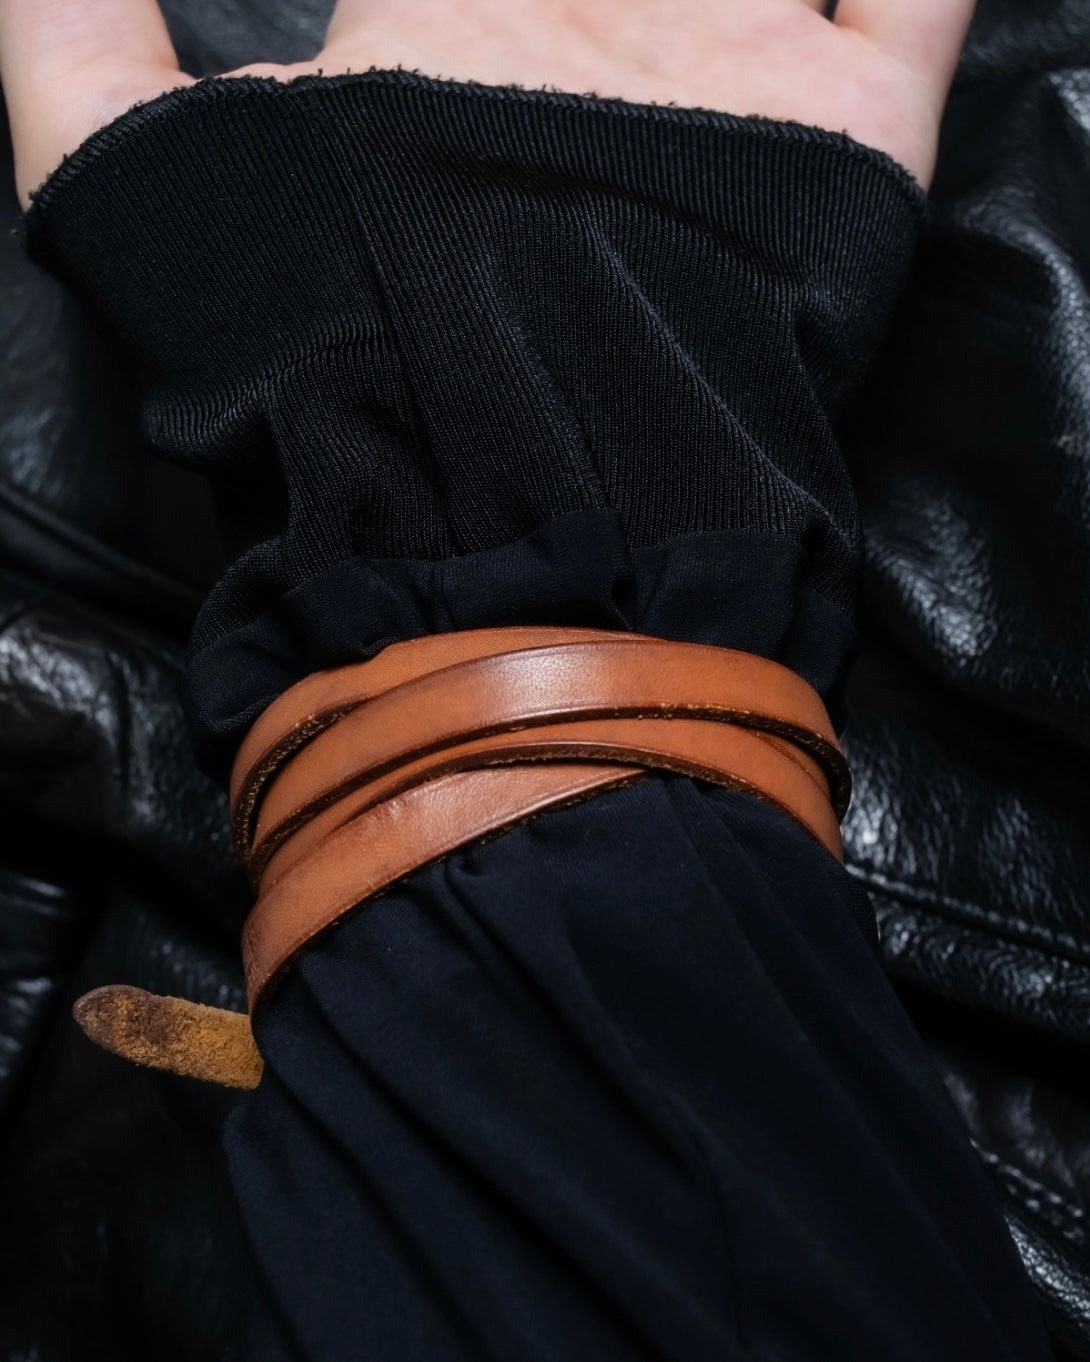 "HERMES" leather bracelet choker